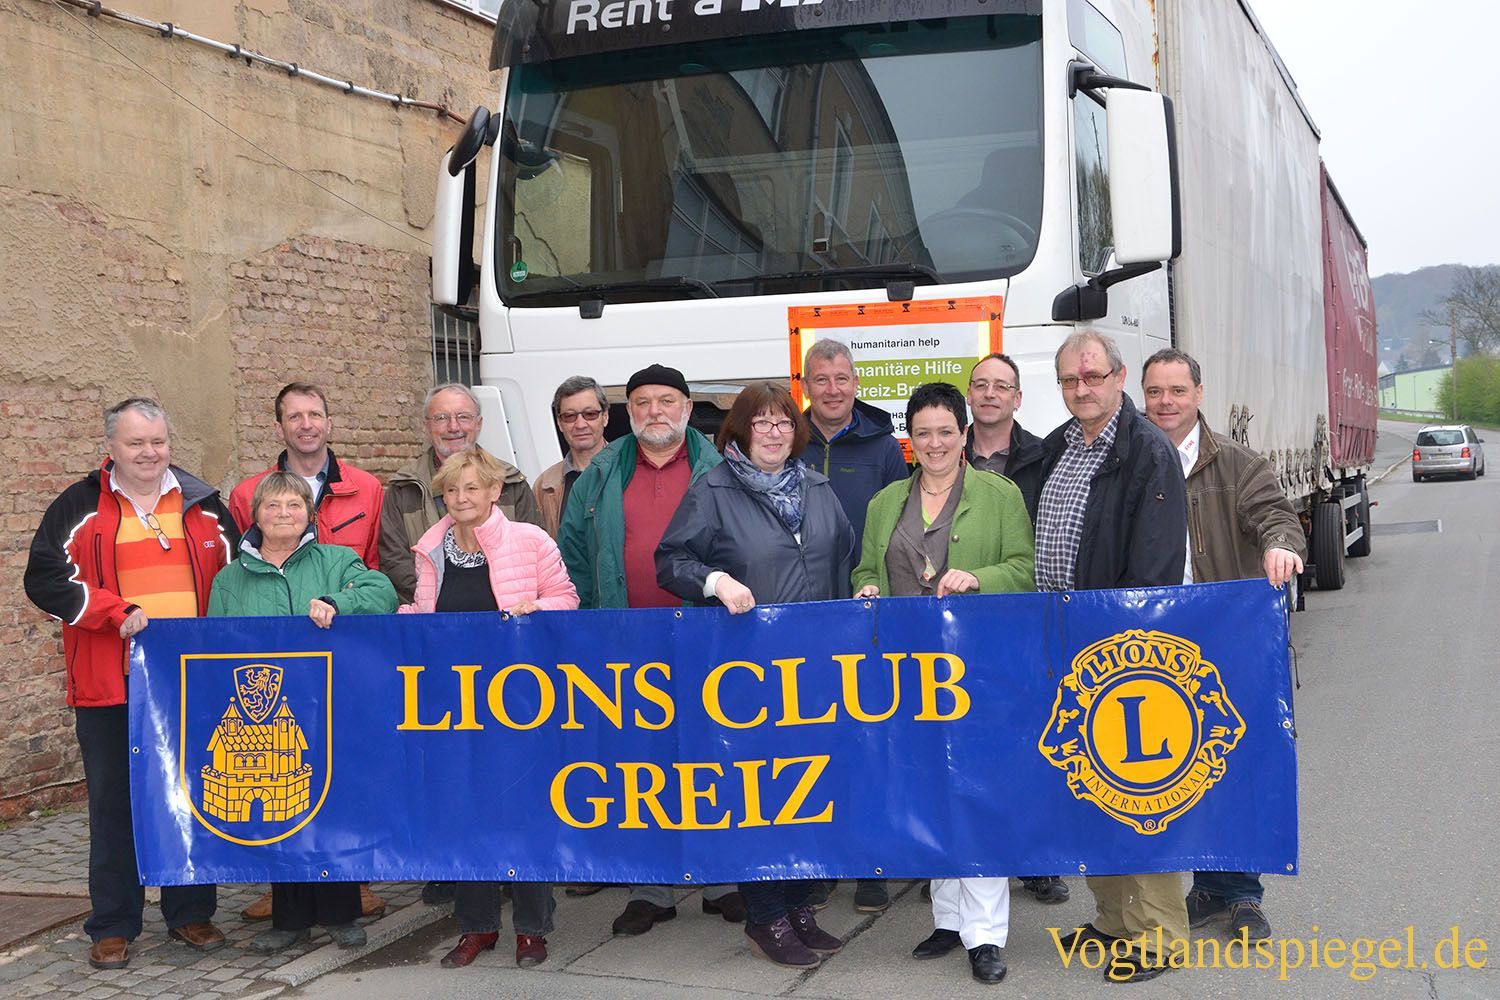 Greizer Lions Club unterstützt Brest-Transport